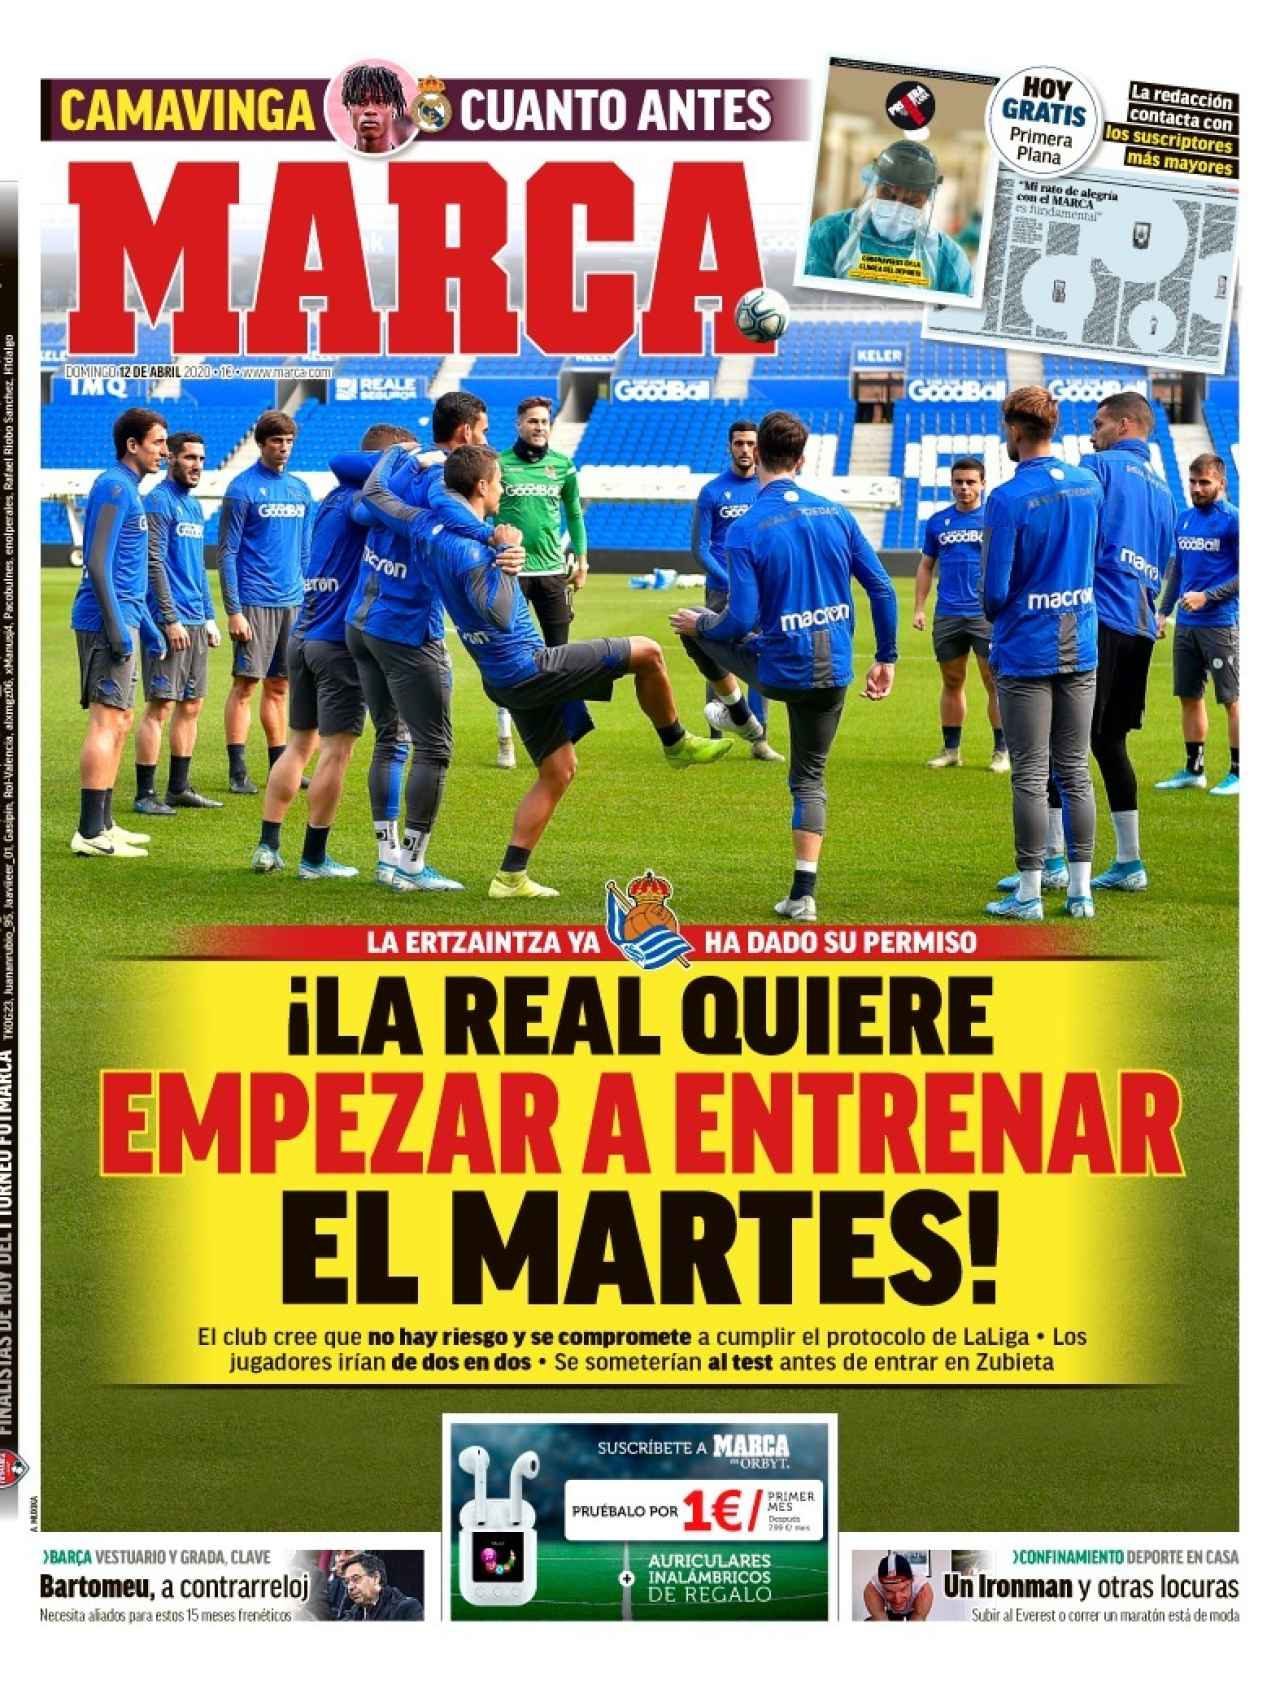 La portada del diario MARCA (12/04/2020)